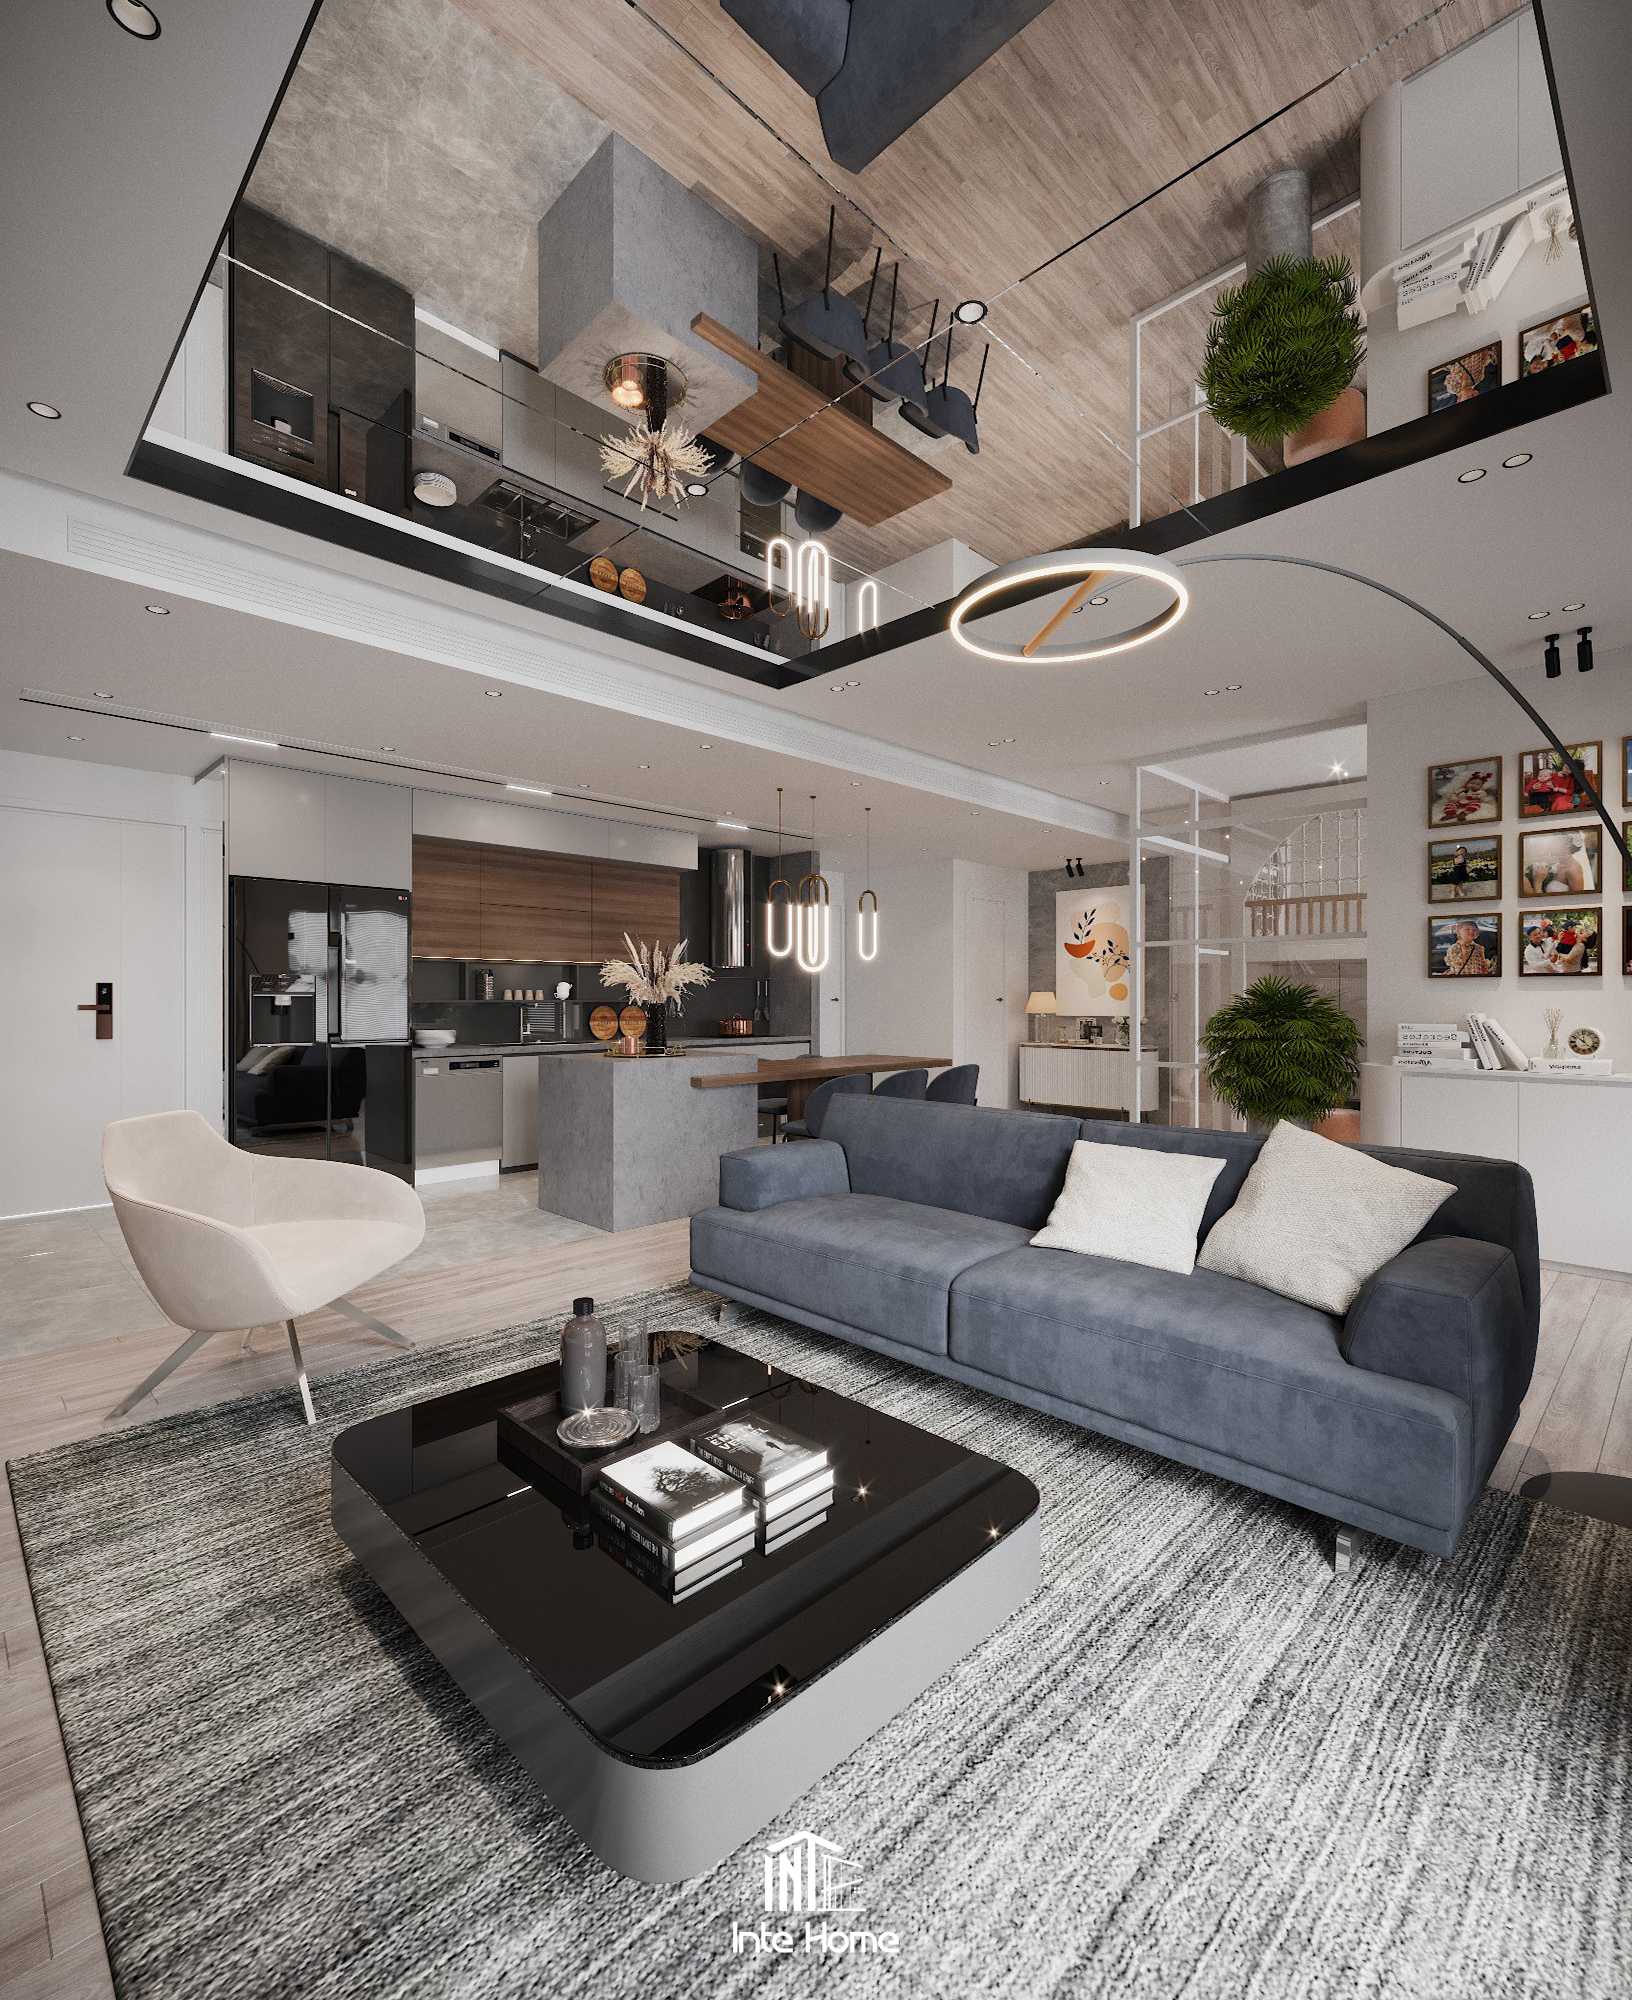 5+ xu hướng thiết kế nội thất chung cư phong cách hiện đại thịnh hành 2022  | BÁO QUẢNG NAM ONLINE - Tin tức mới nhất